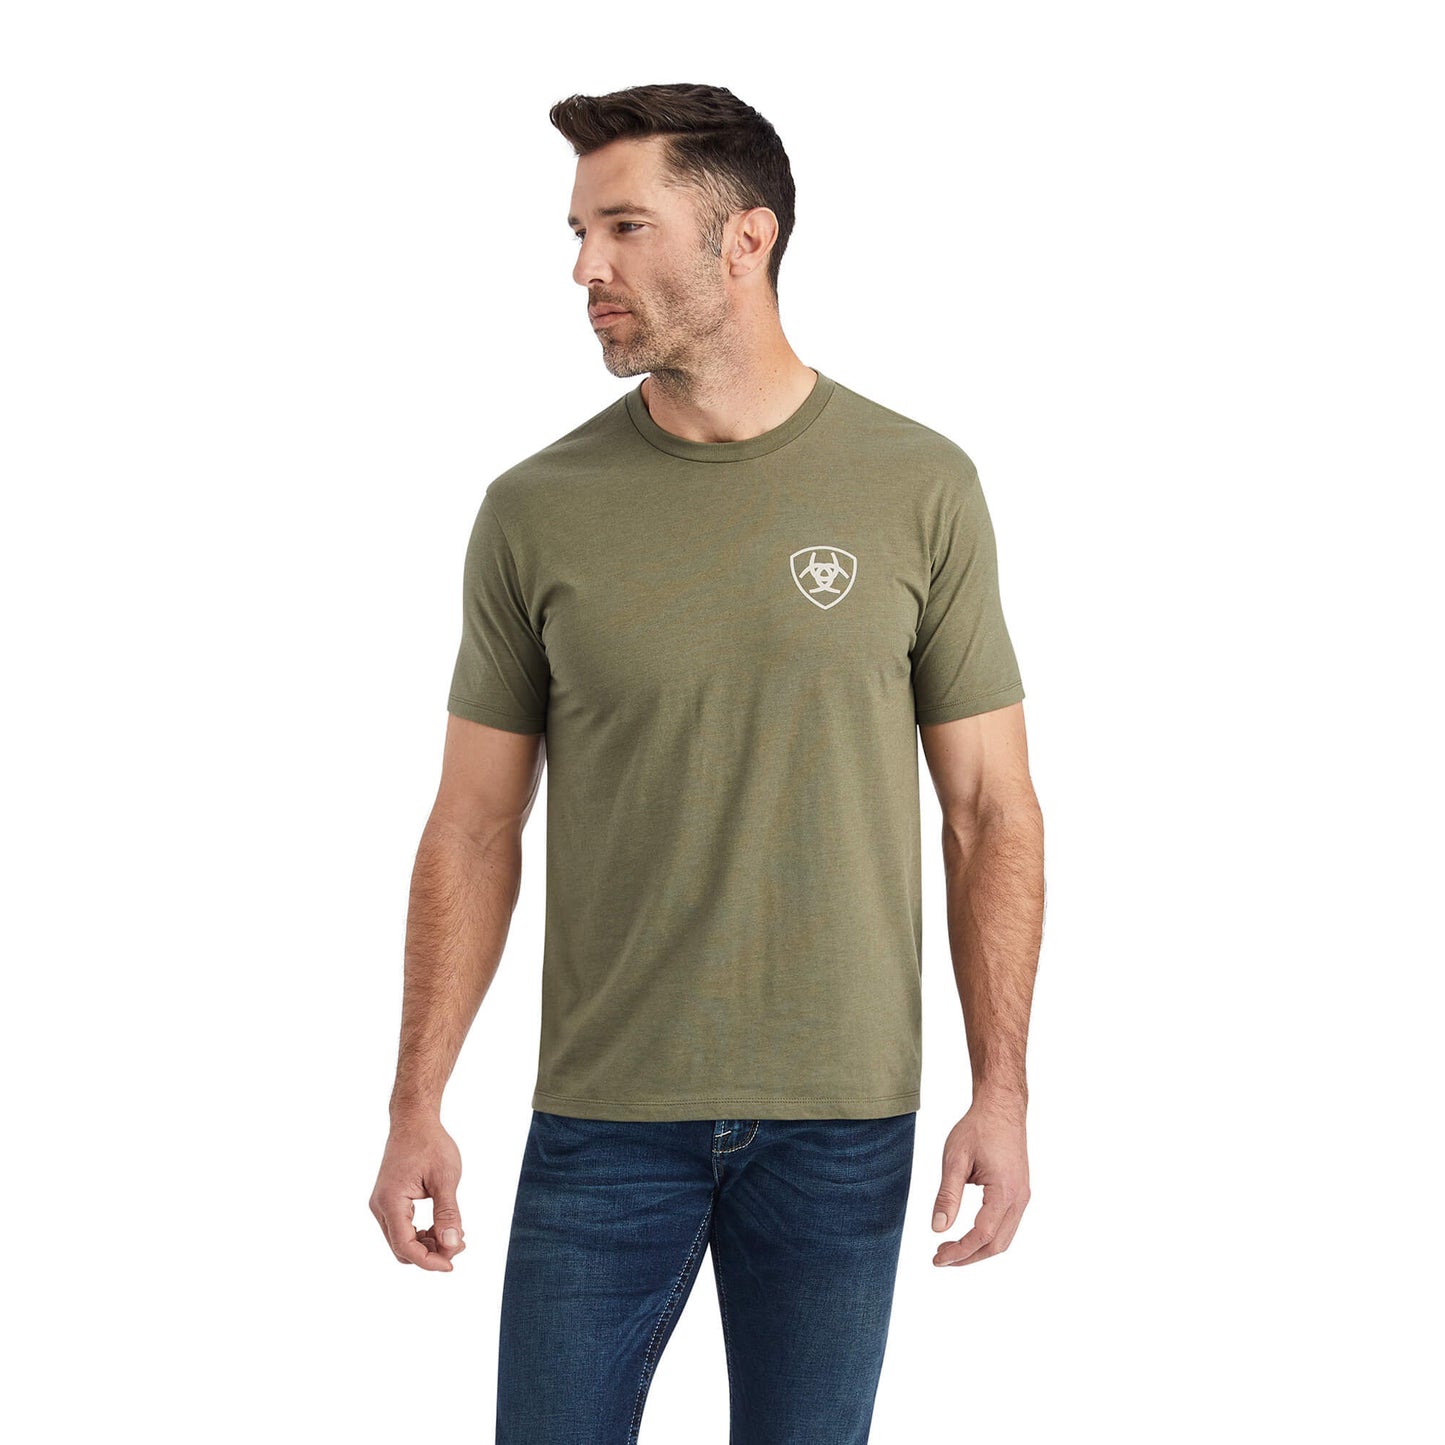 Ariat Hexafill T-Shirt Military Heather Green Men's